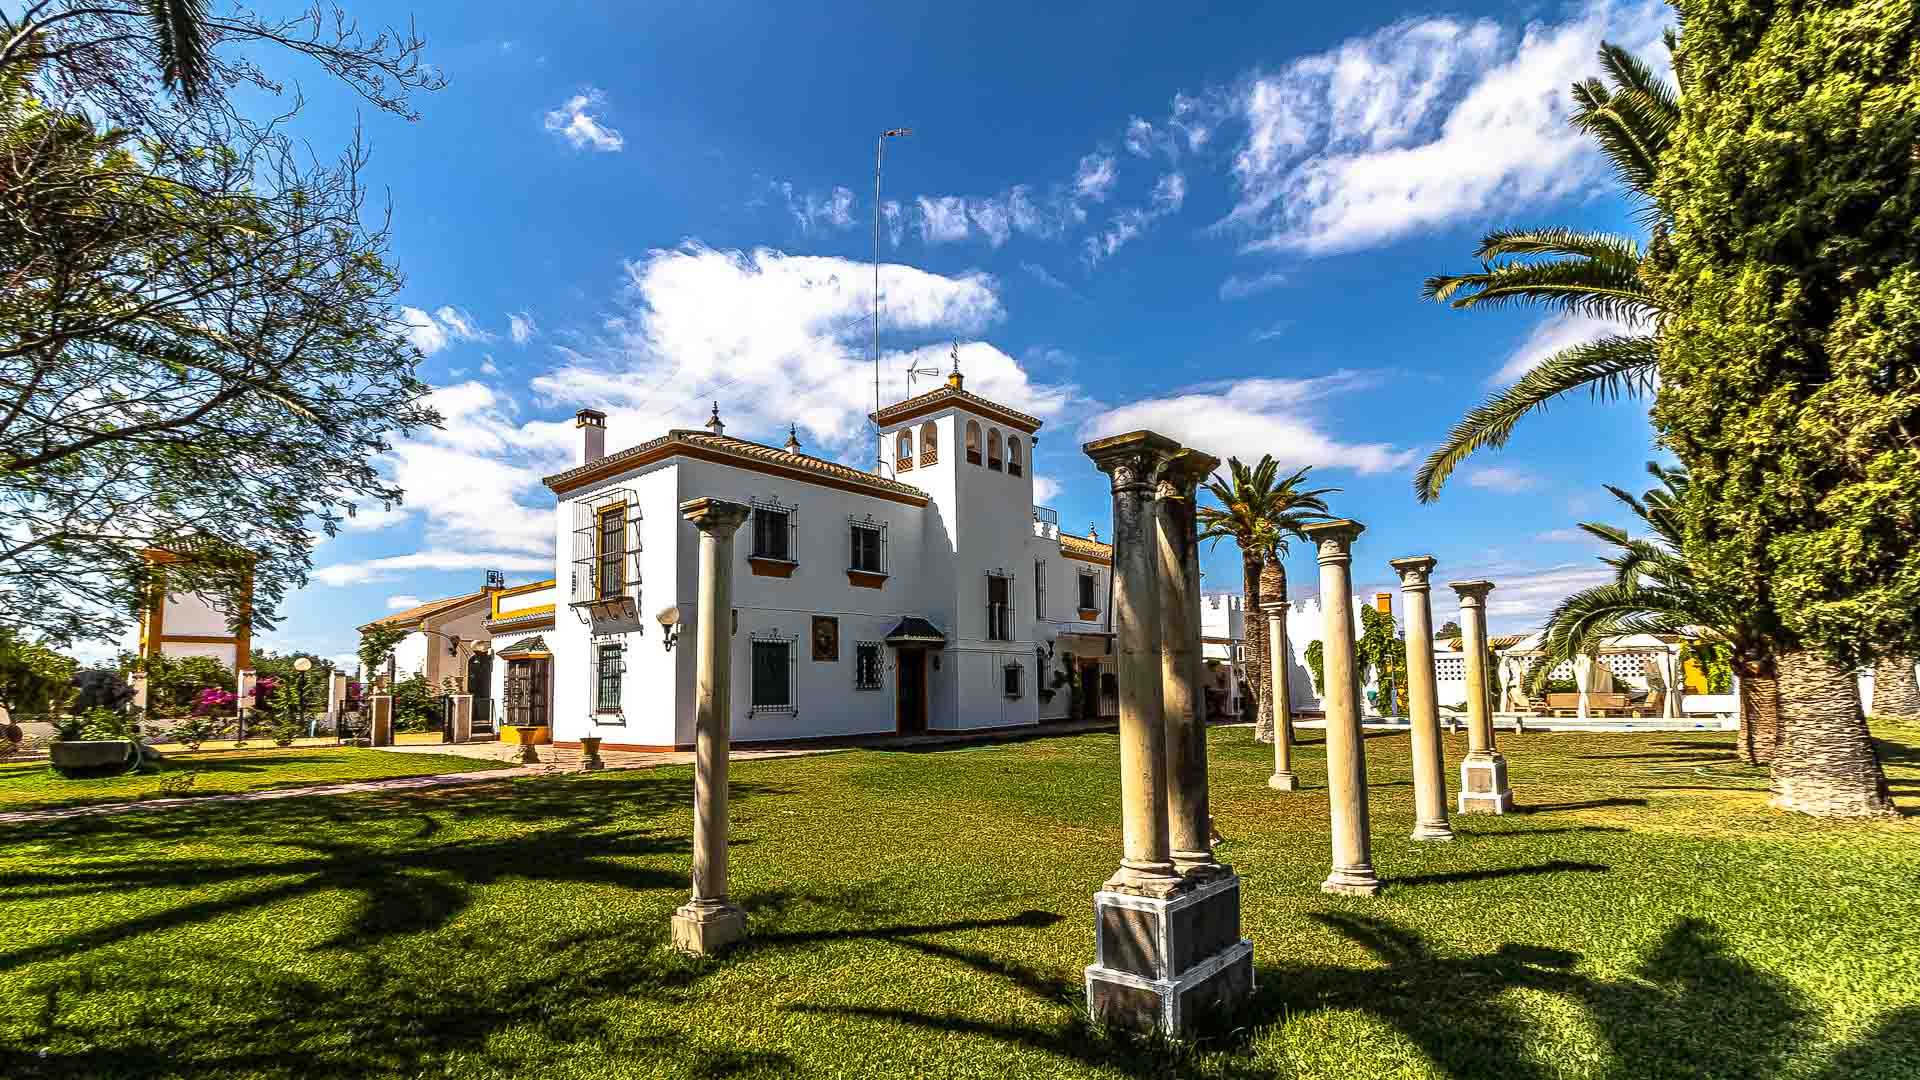 Vivienda Rural Hacienda El Corchuelo